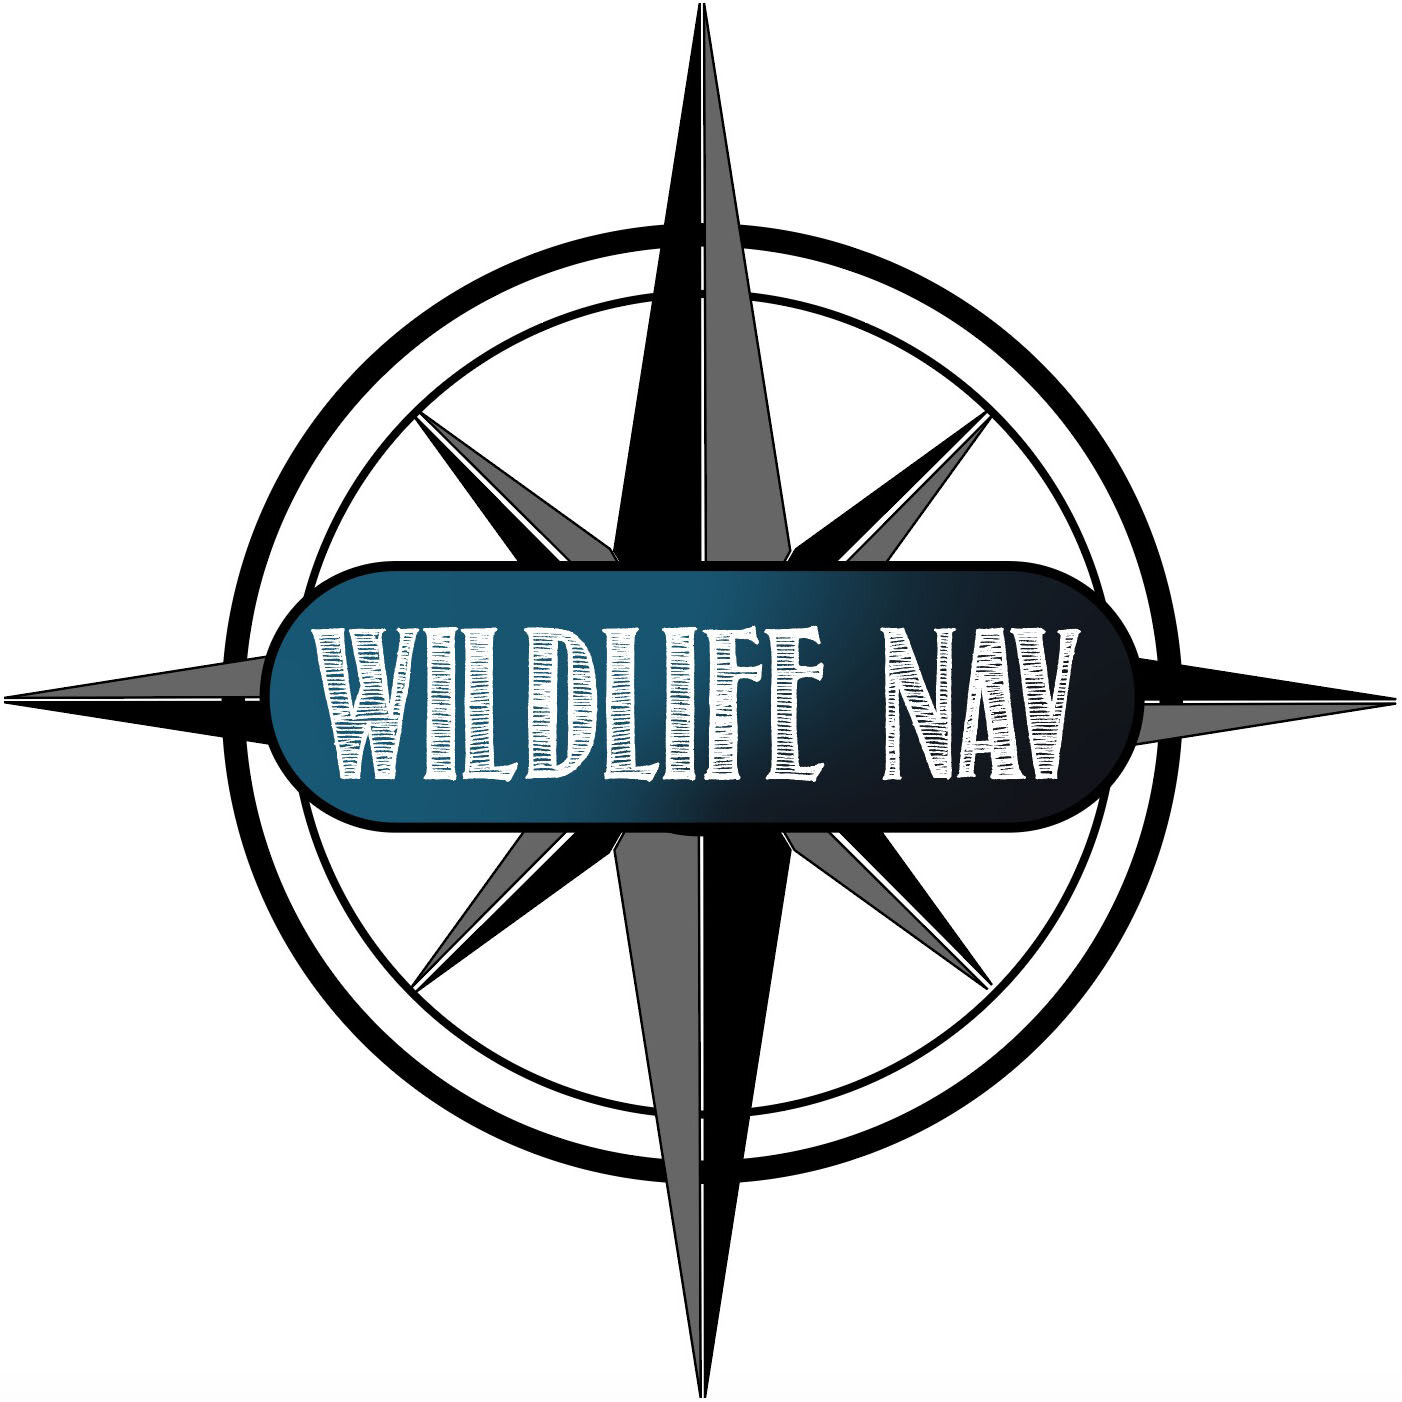 Wildlife Nav